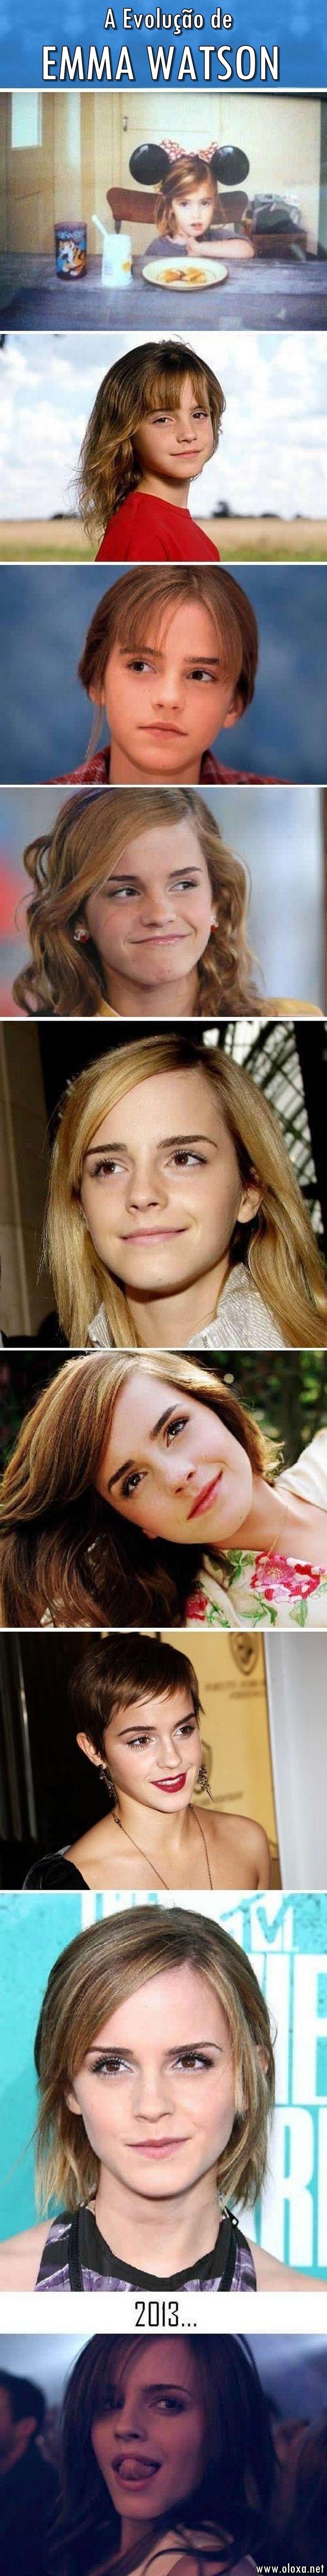 A evolução de Emma Watson